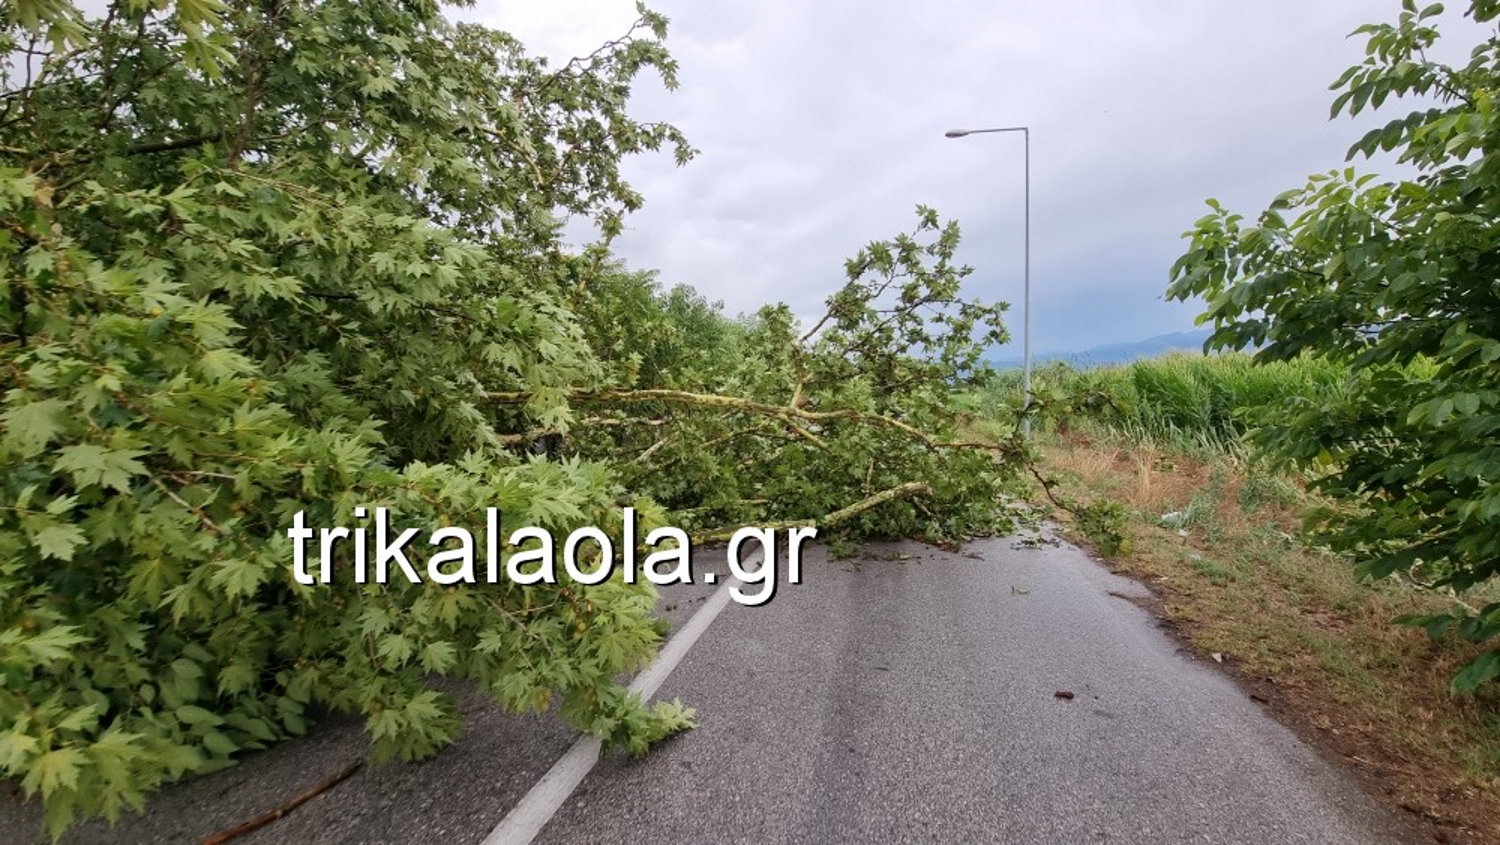 Τρίκαλα: Δυνατό μπουρίνι ξερίζωσε δέντρα και προκάλεσε ζημιές